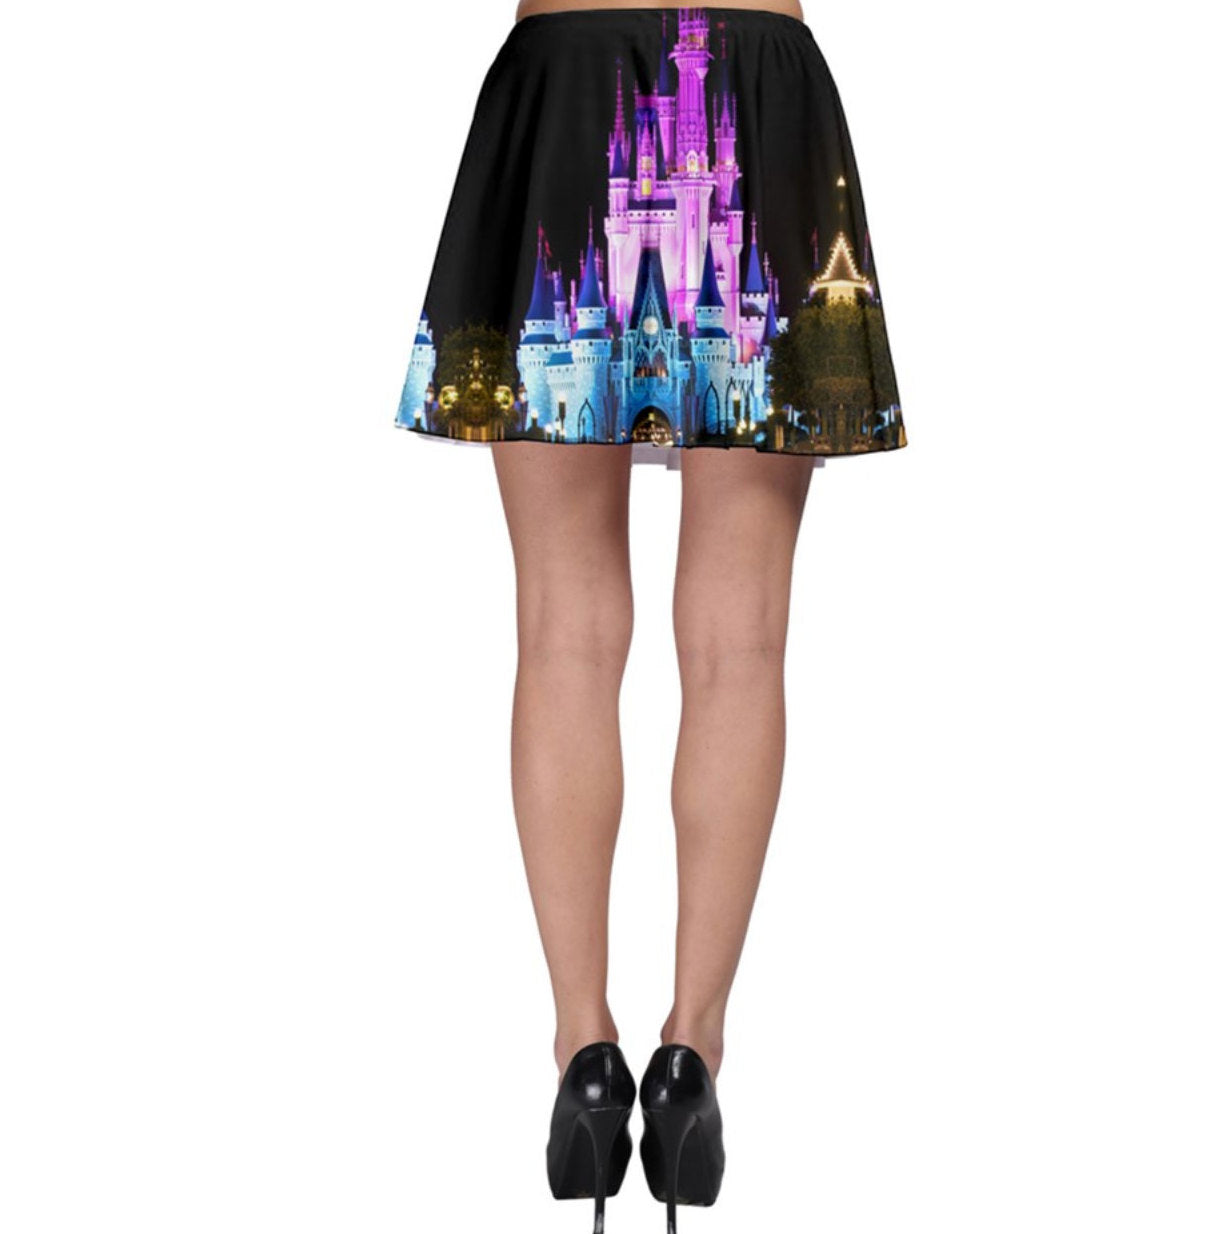 Nighttime Cinderella Castle Inspired Skater Skirt